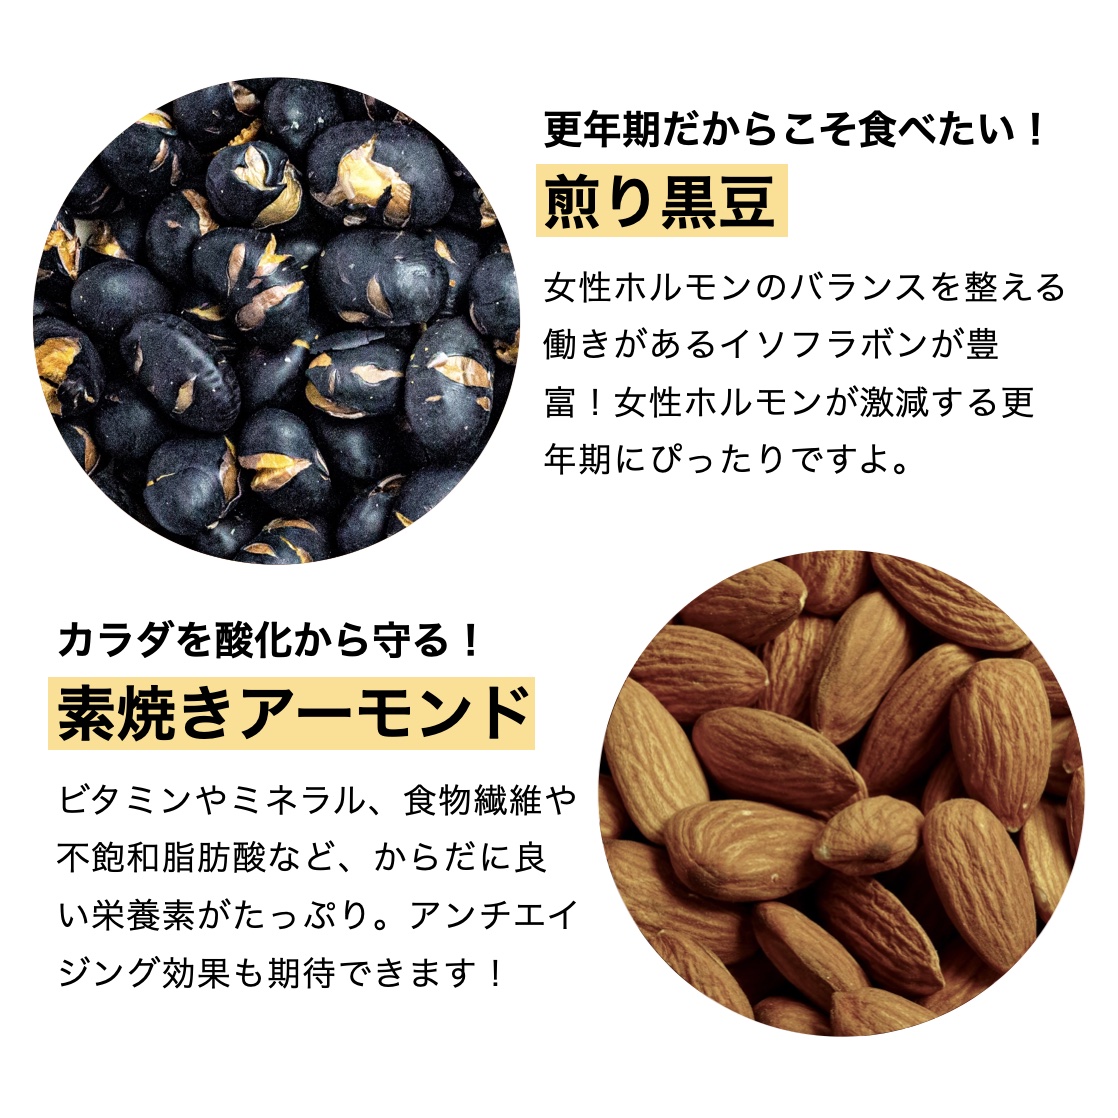 更年期専門店オアディスワンのおきかえナッツ「はつらっつ」に含まれる黒豆とアーモンドの栄養価を説明しているイメージ